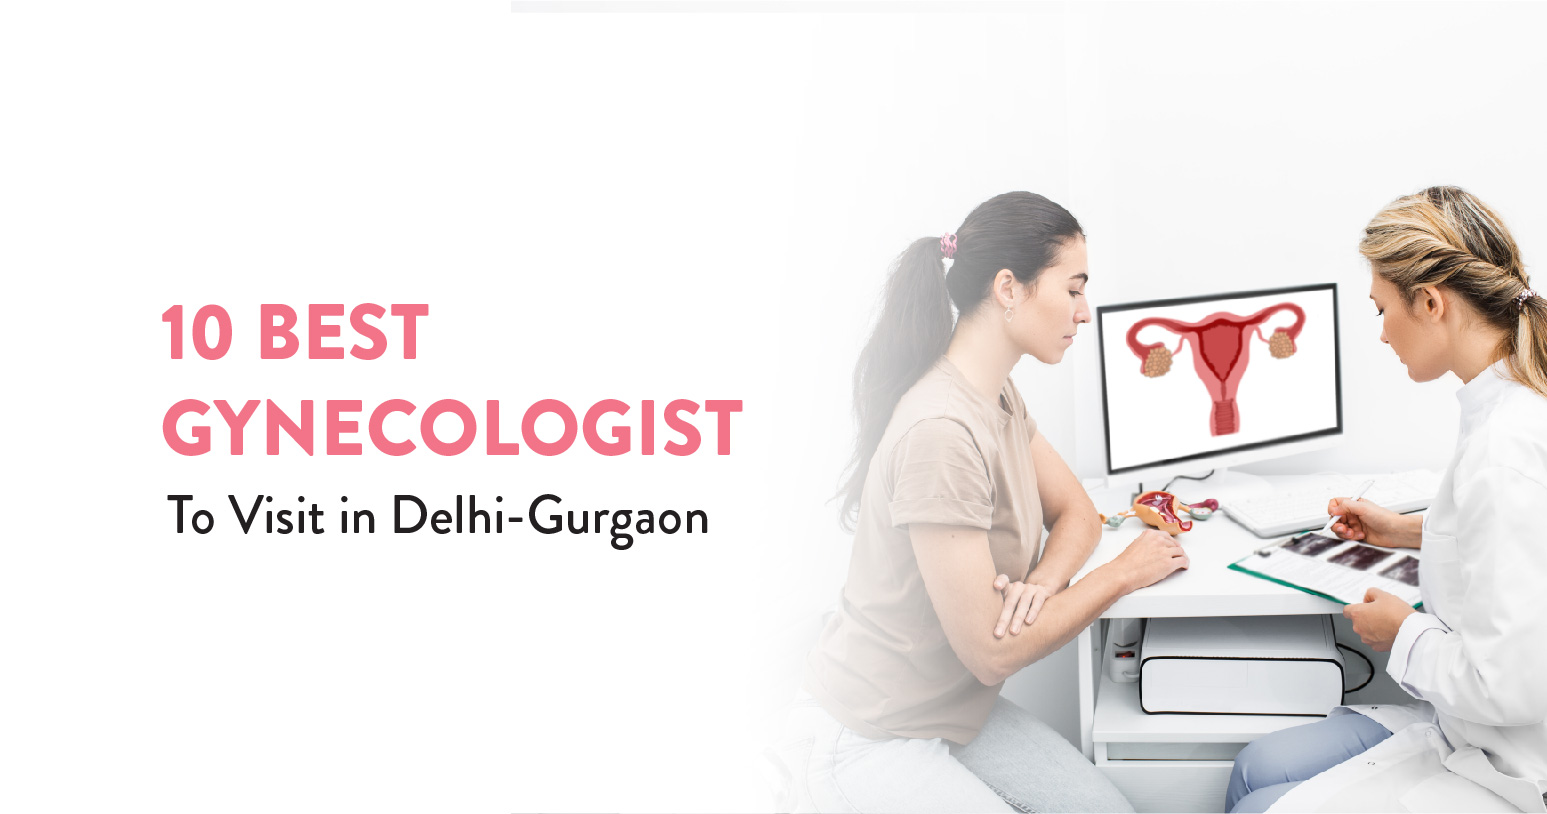 10 Best Gynecologist to Visit in Delhi-Gurgaon banner